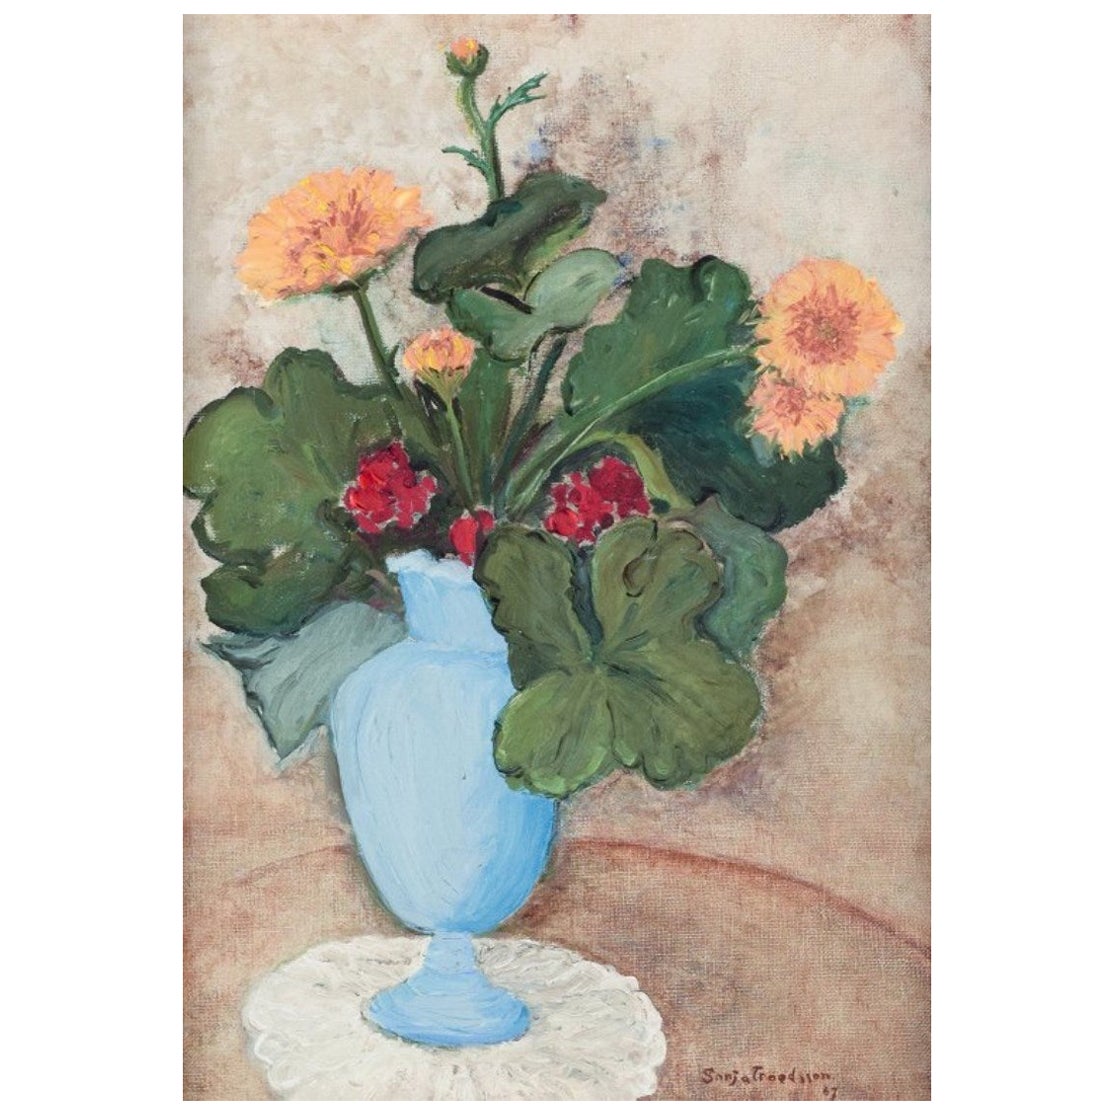 Sonja Troedsson, Swedish artist. Oil on canvas. Modernist floral still life For Sale